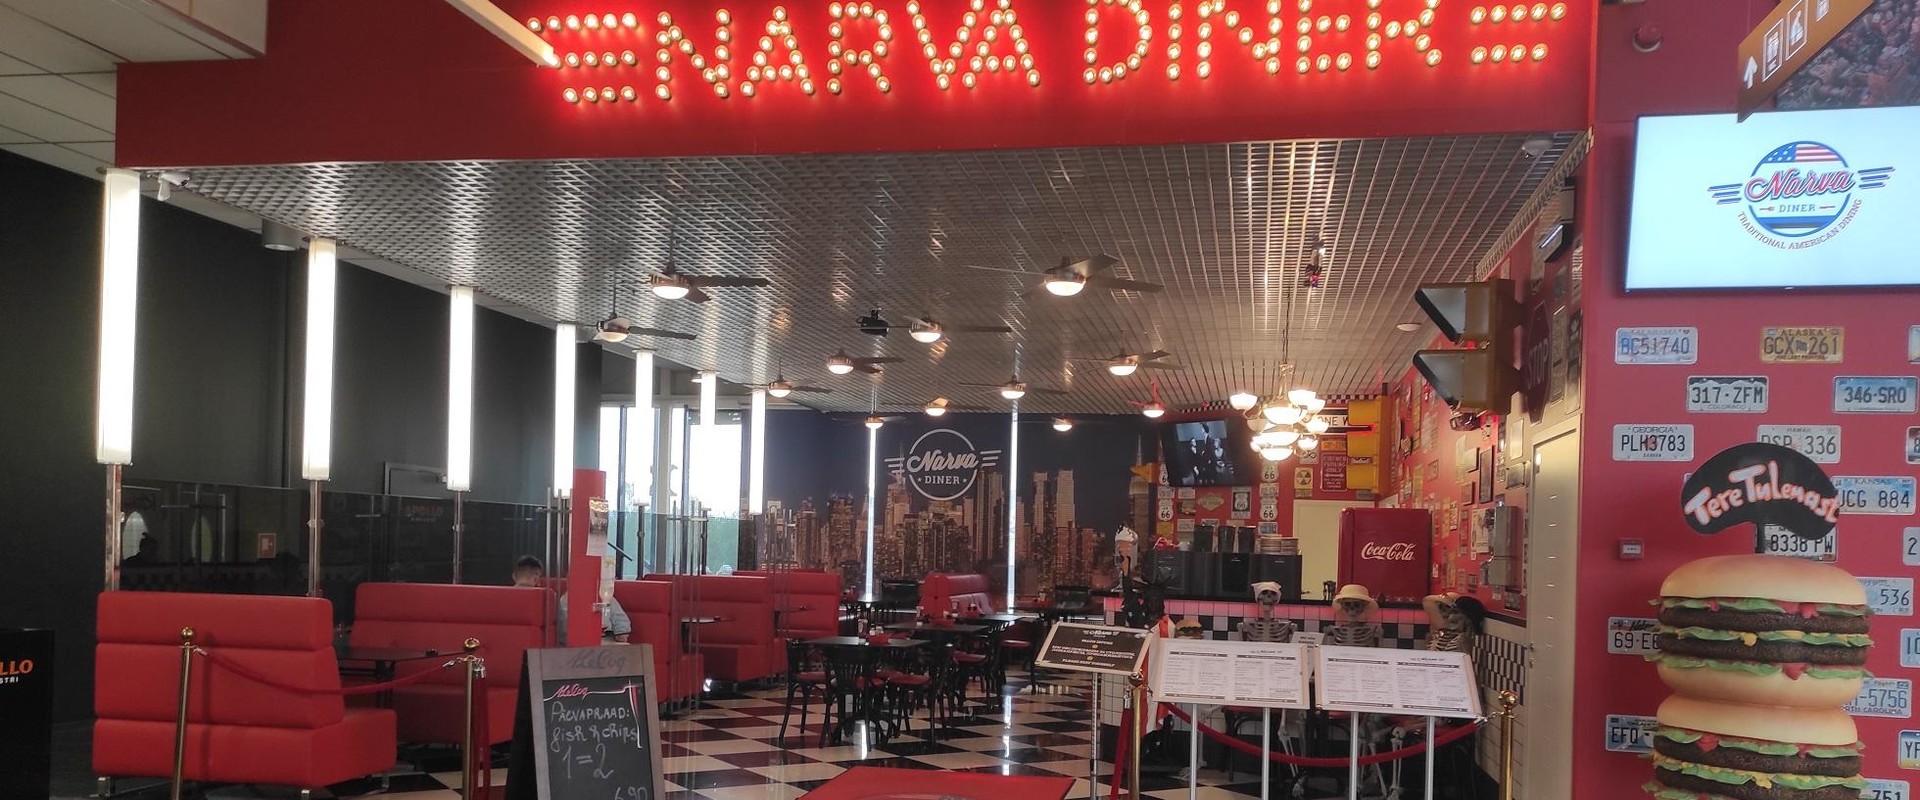 Tule ja koge tõelist ameerikapärast fiilingut Astri kaubanduskeskuse kohvikus "Narva Diner"! "Narva Diner" on suurepärane hubase atmosfääriga söögikoh